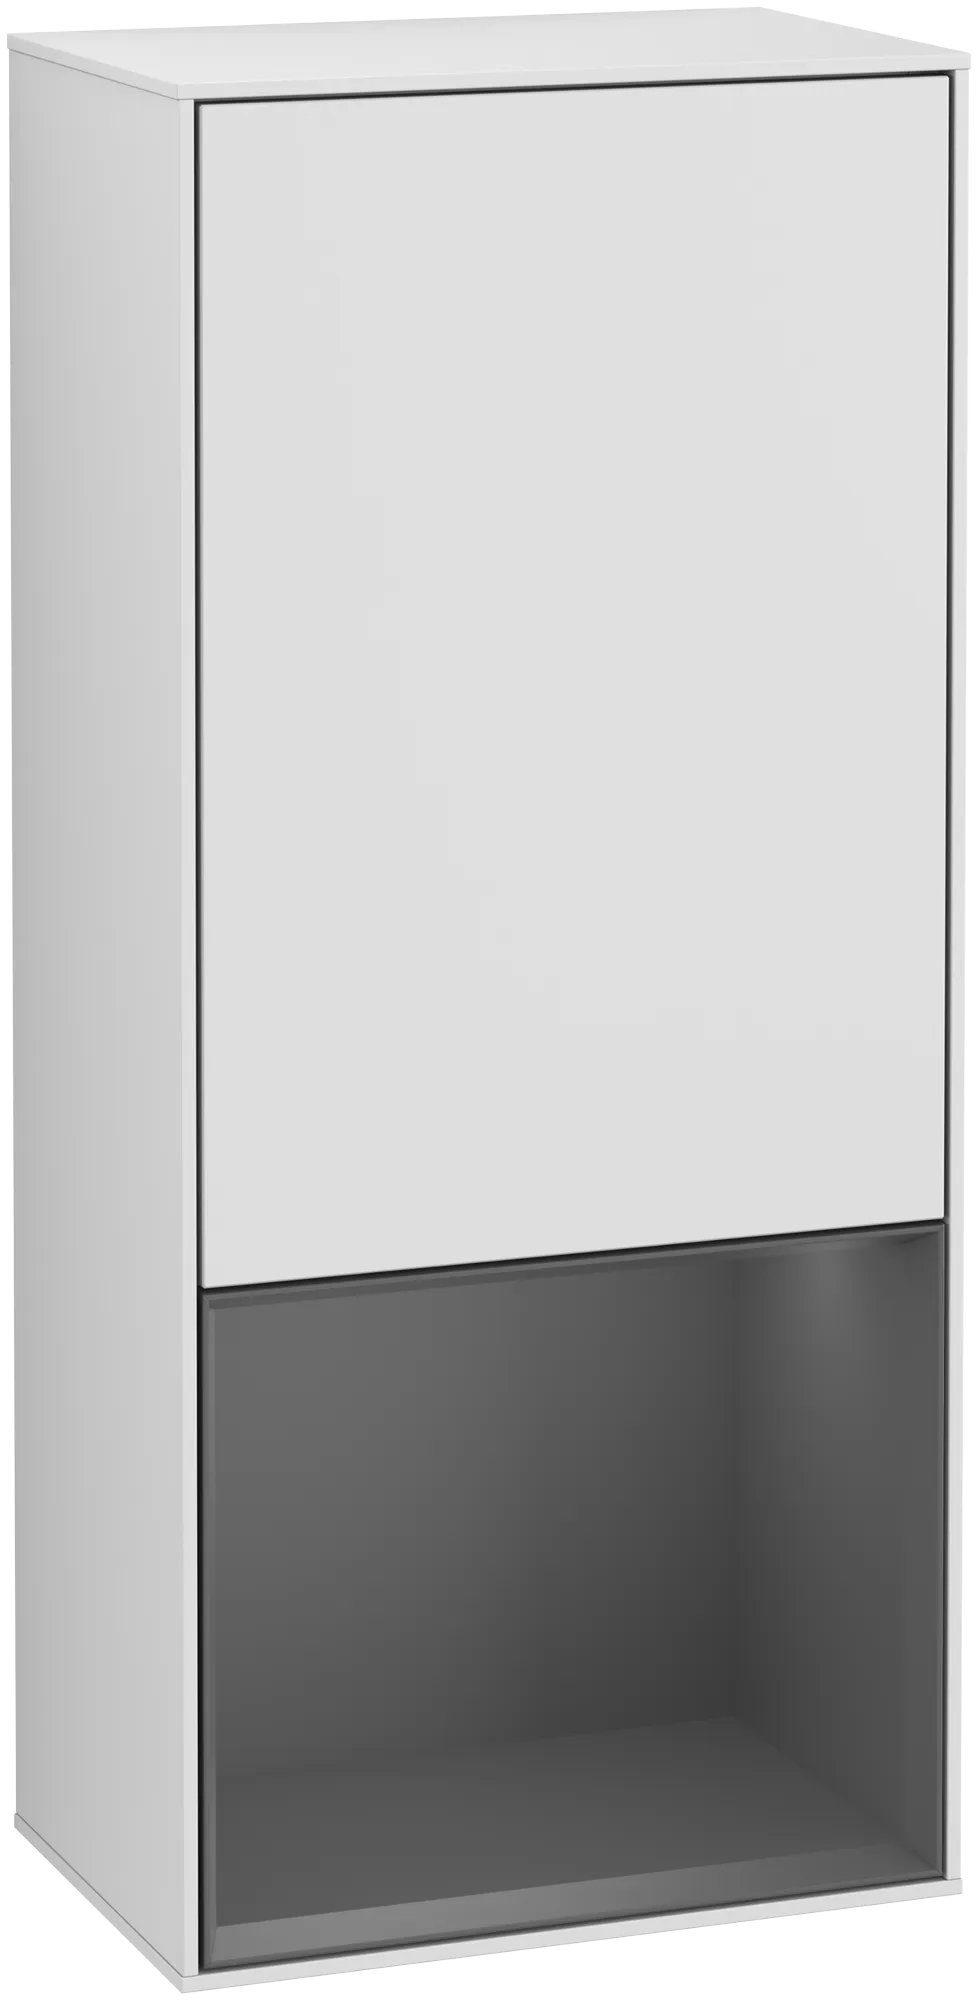 Bild von VILLEROY BOCH Finion Seitenschrank, mit Beleuchtung, 1 Tür, 418 x 936 x 270 mm, White Matt Lacquer / Anthracite Matt Lacquer #G540GKMT